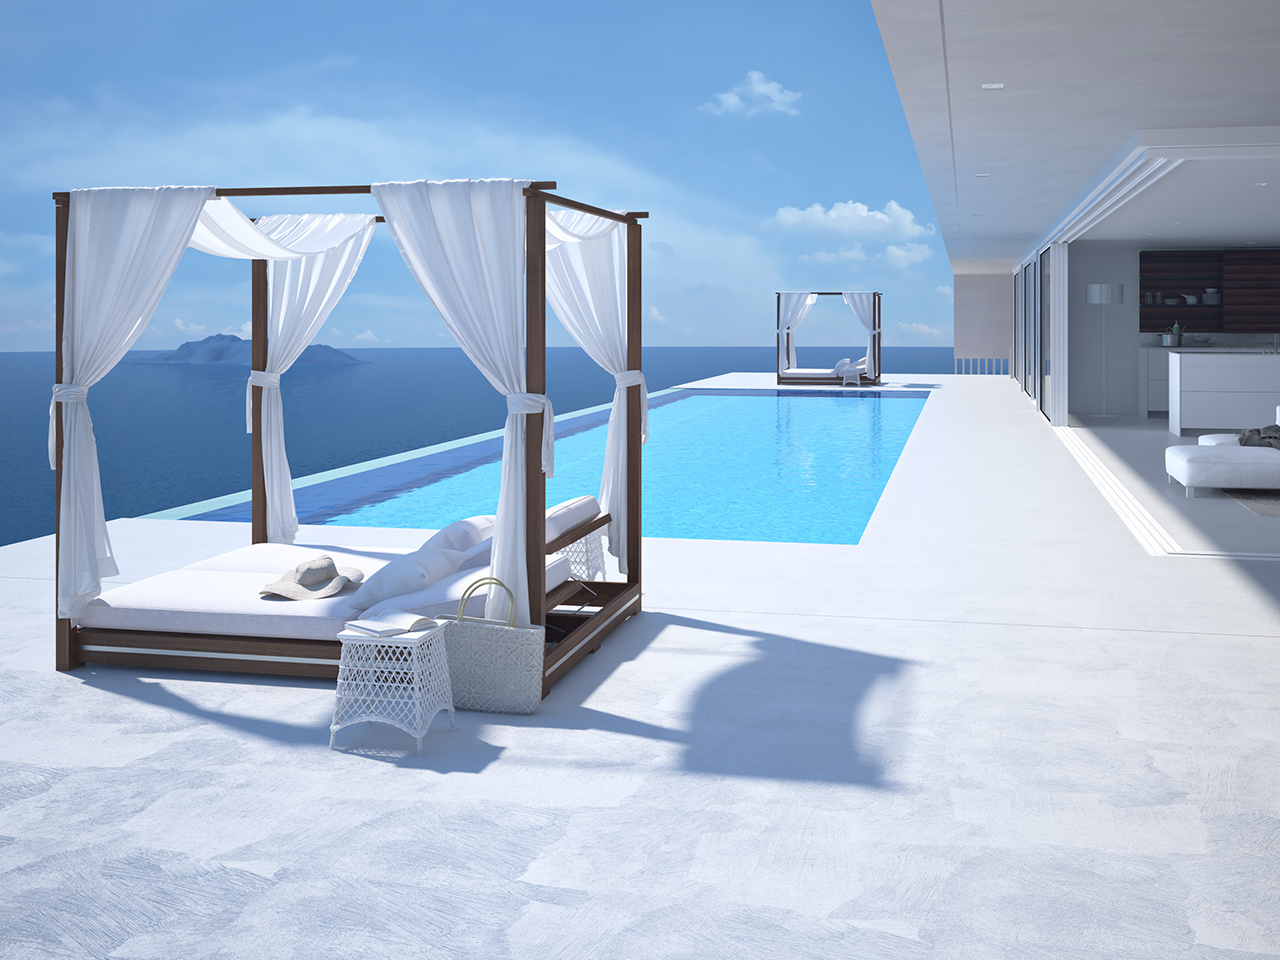 A luxury swimming pool in santorini. 3d rendering